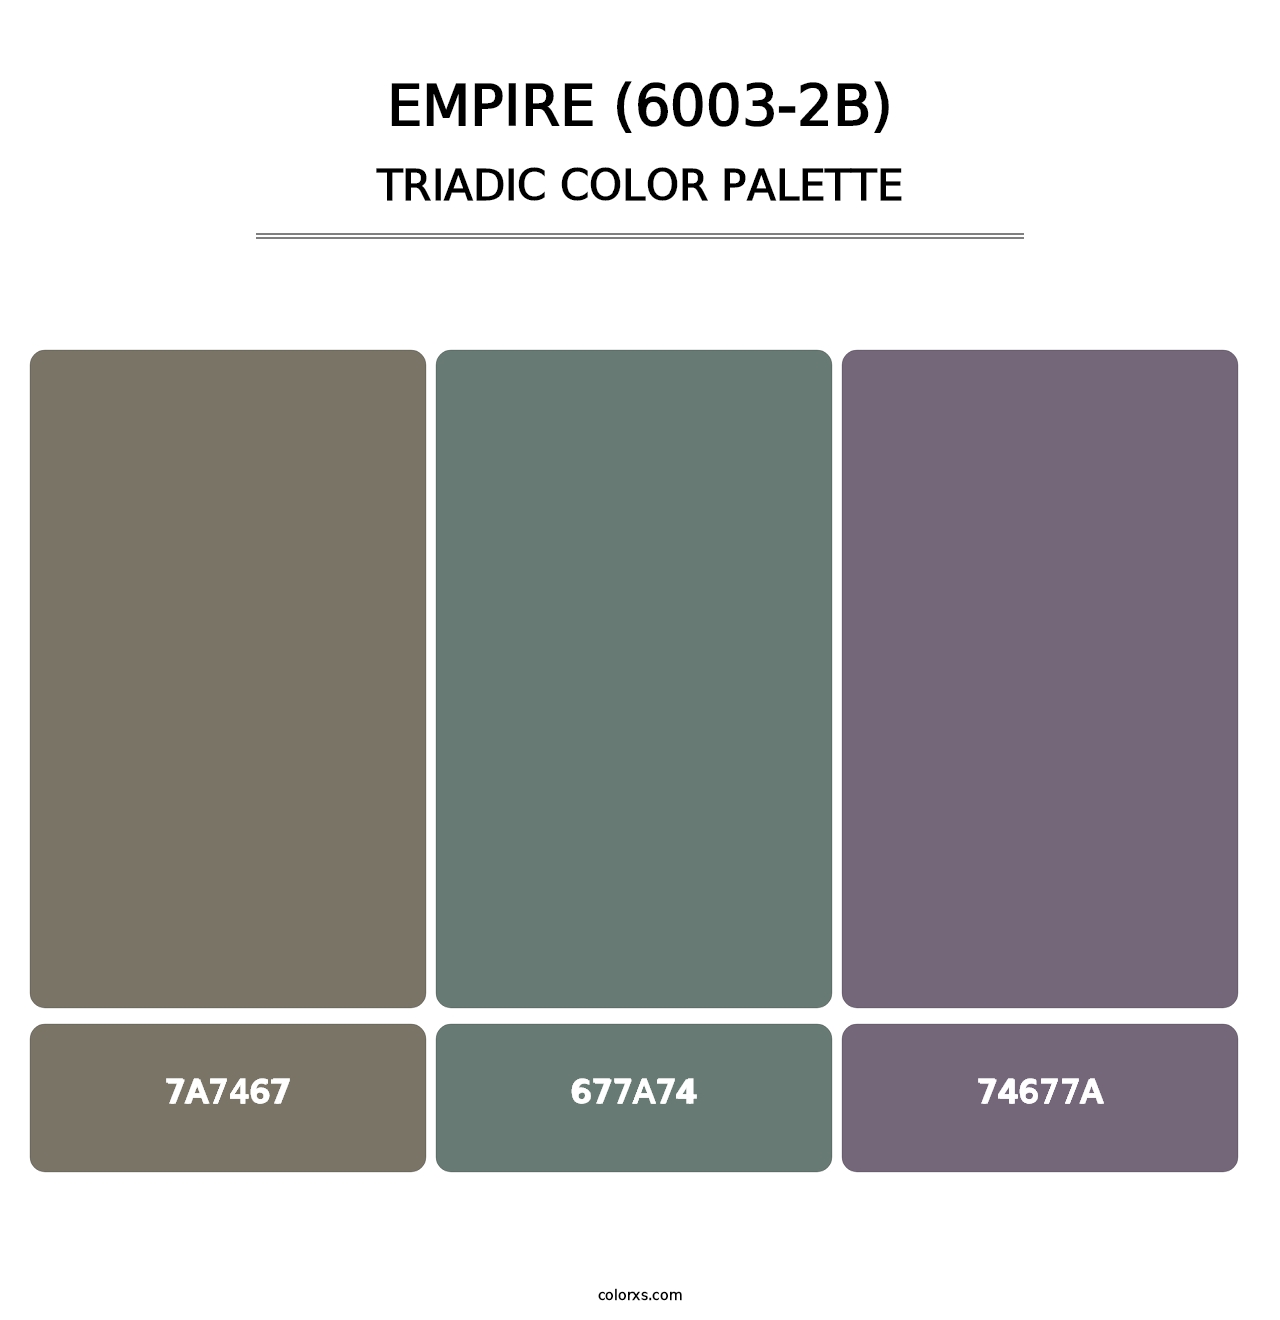 Empire (6003-2B) - Triadic Color Palette